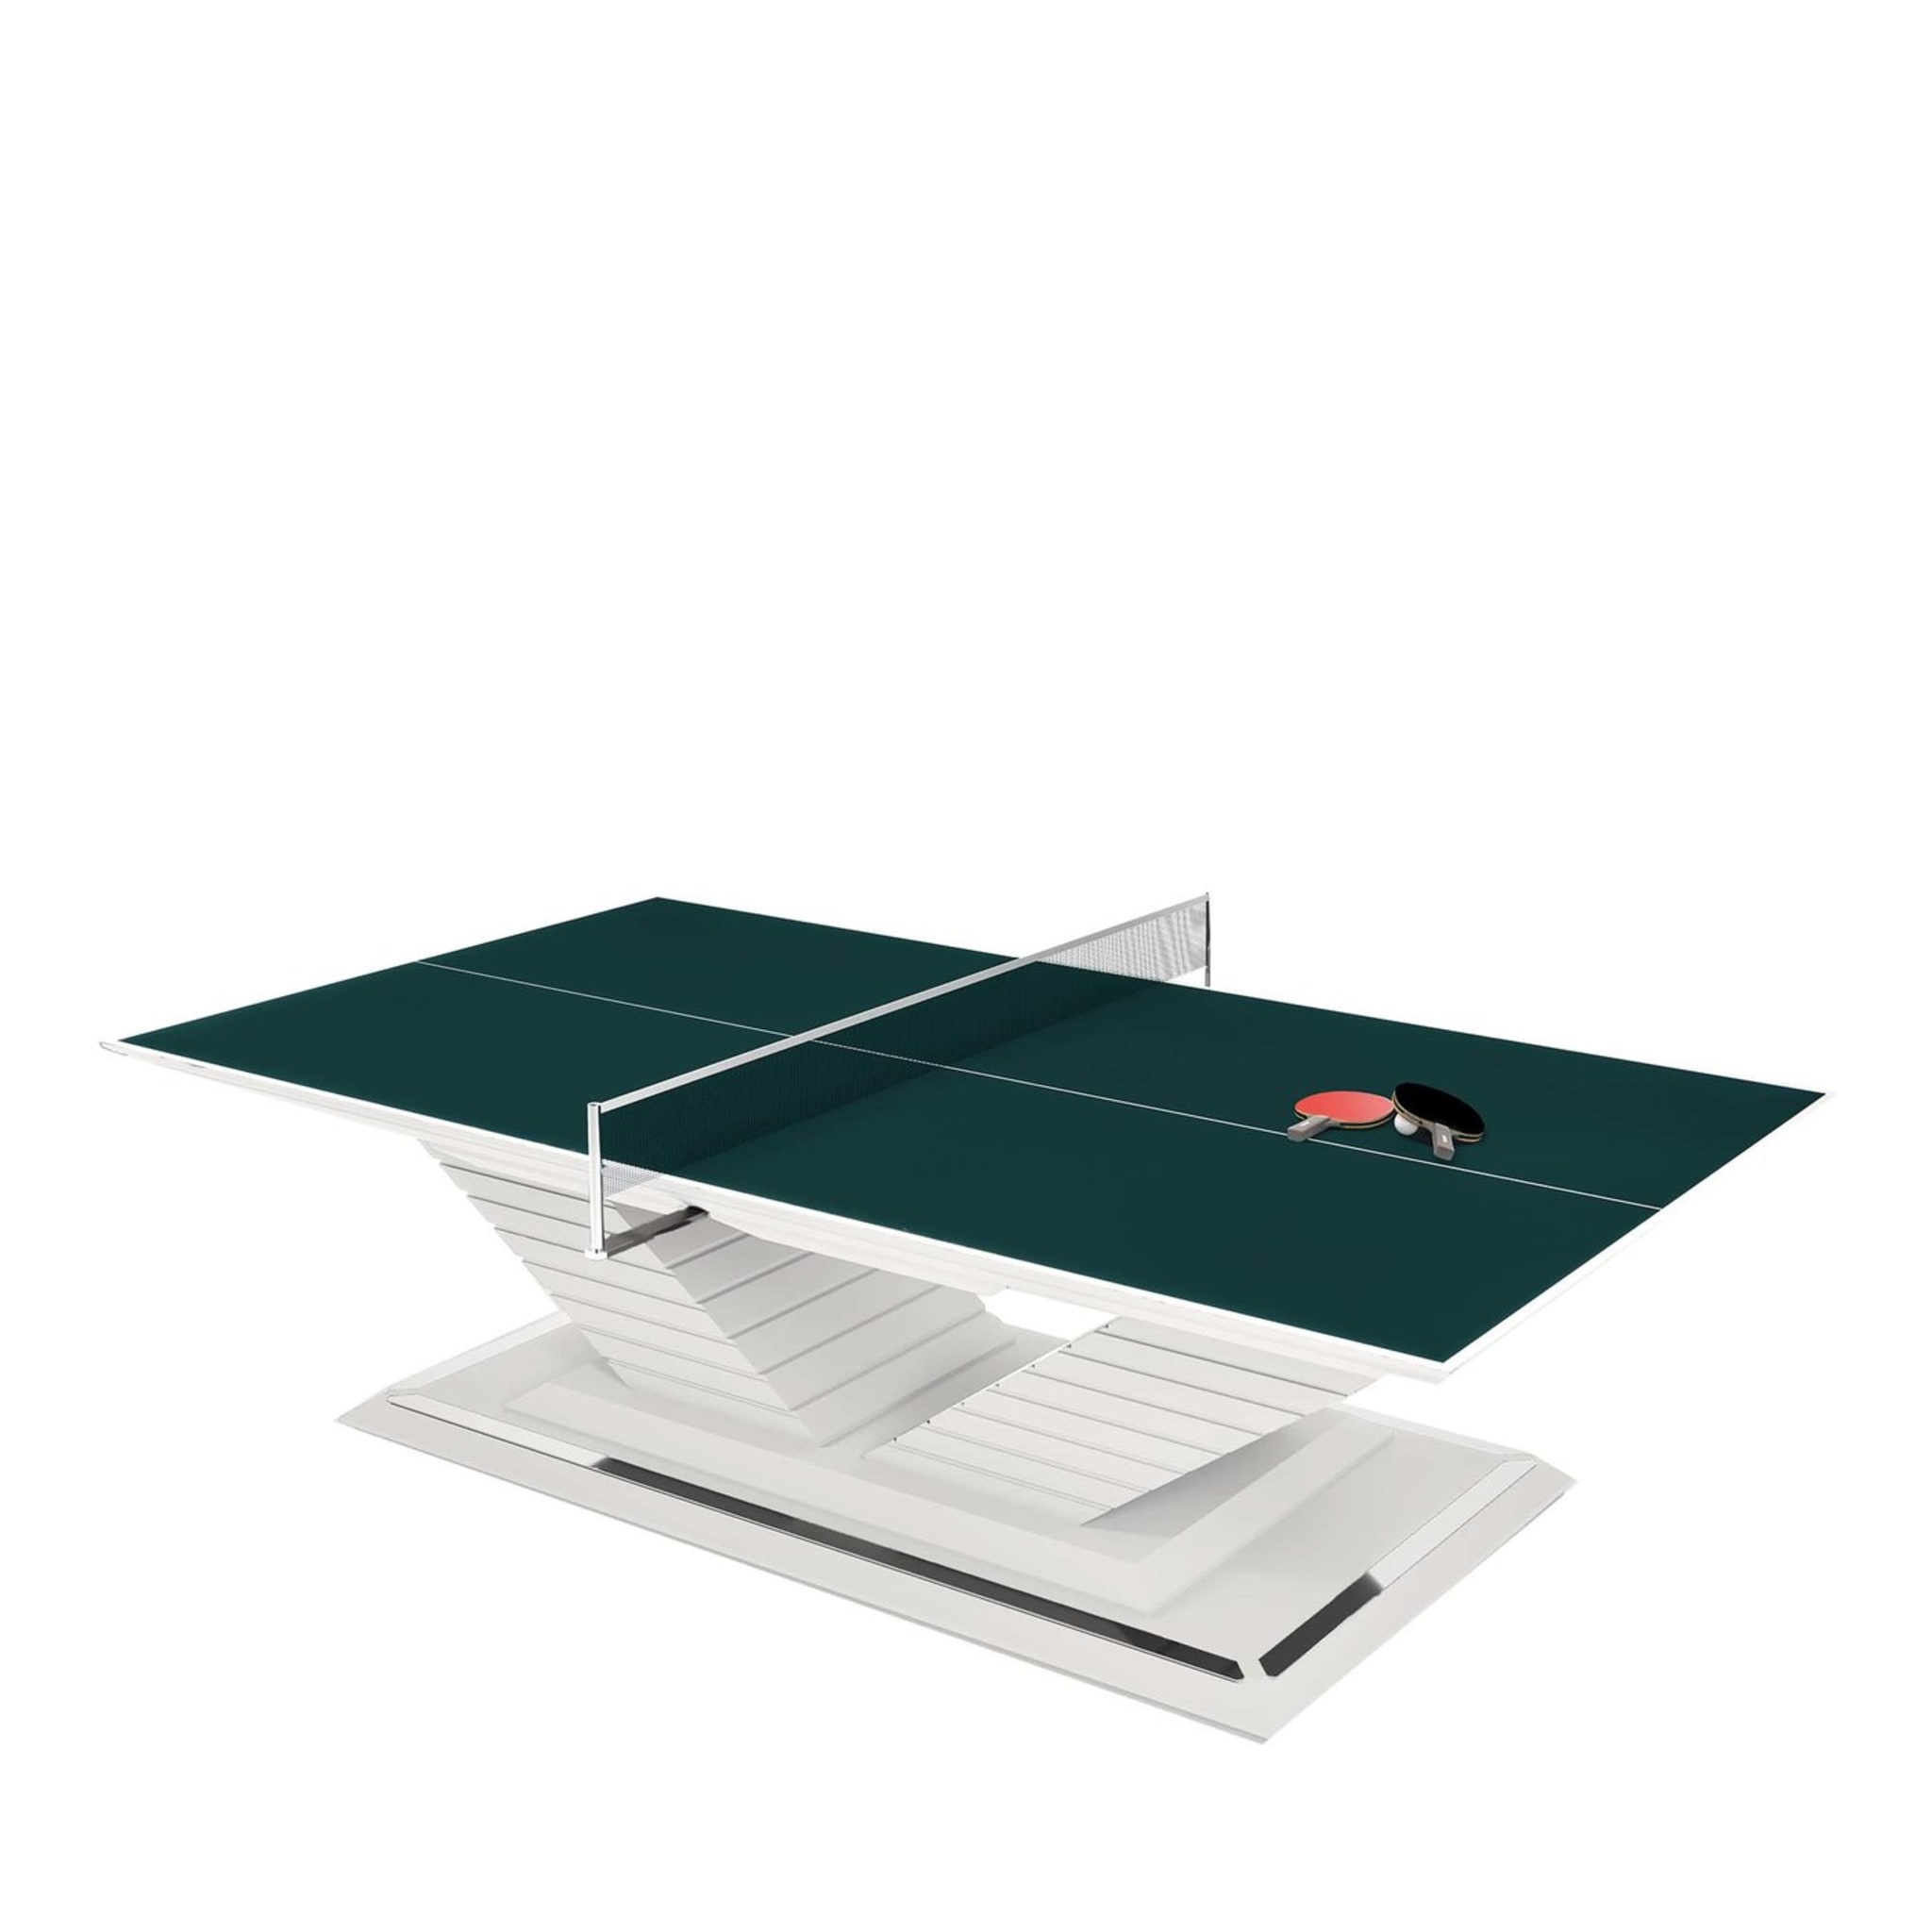 Arena Ping Pong table by Pino Vismara - Main view